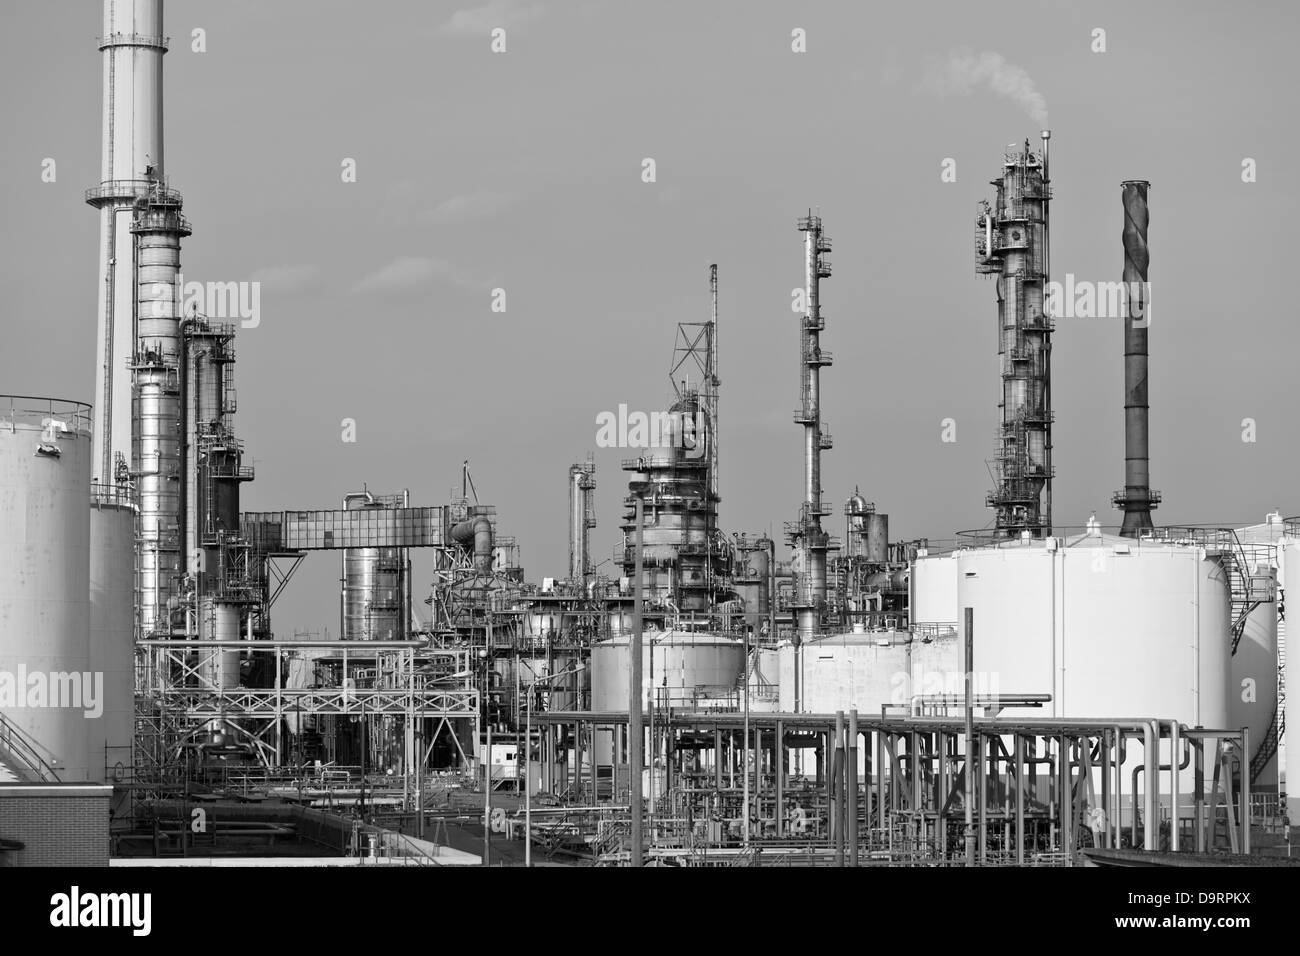 Les réservoirs de stockage de pétrole et de tours de distillation dans une raffinerie en journée. Image en noir et blanc. Banque D'Images